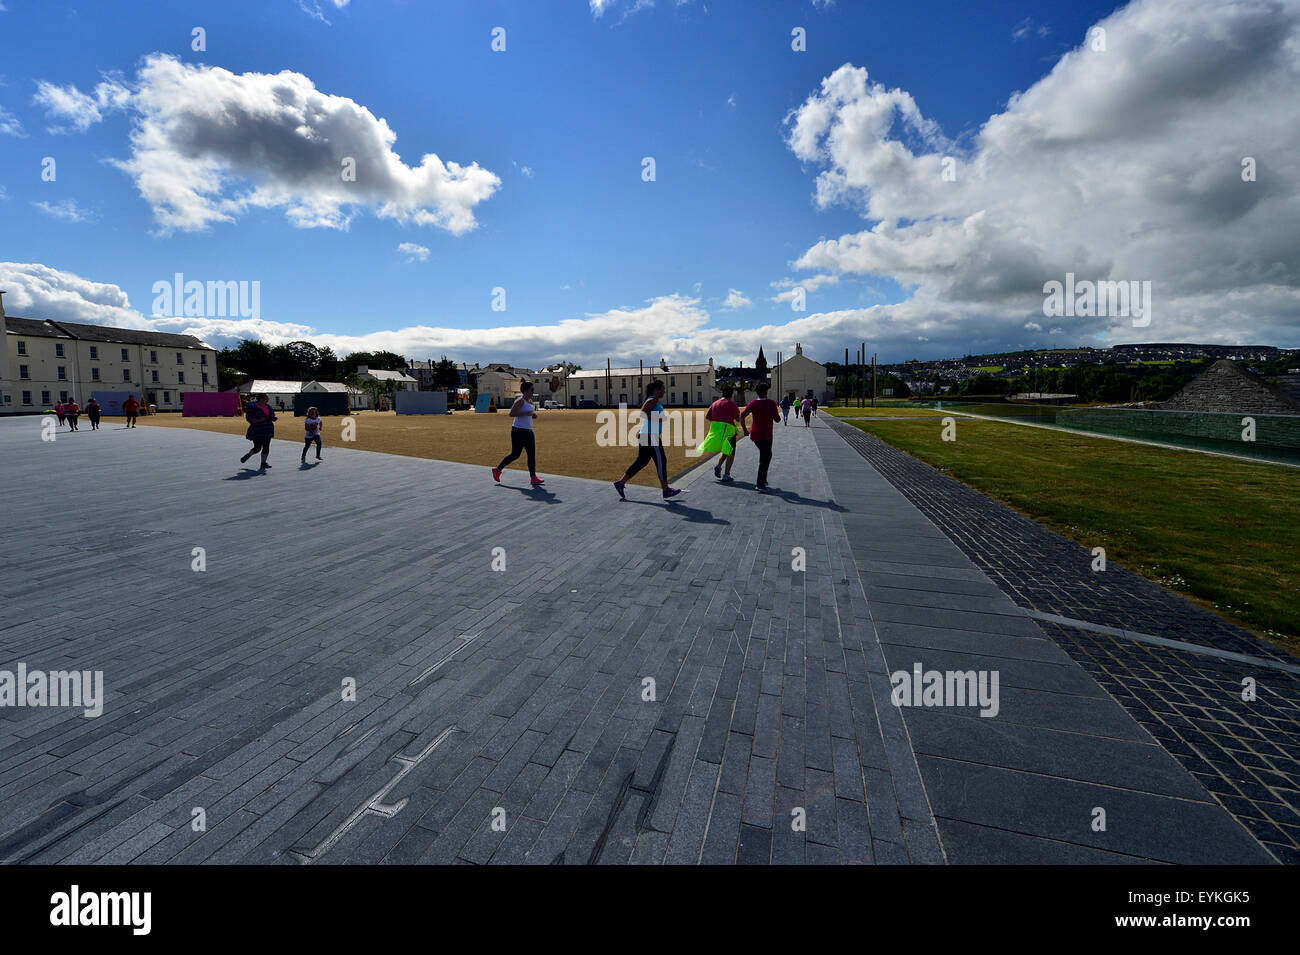 Les gens participent à boot camp fitness à Ebrington Square, Londonderry, en Irlande du Nord Banque D'Images